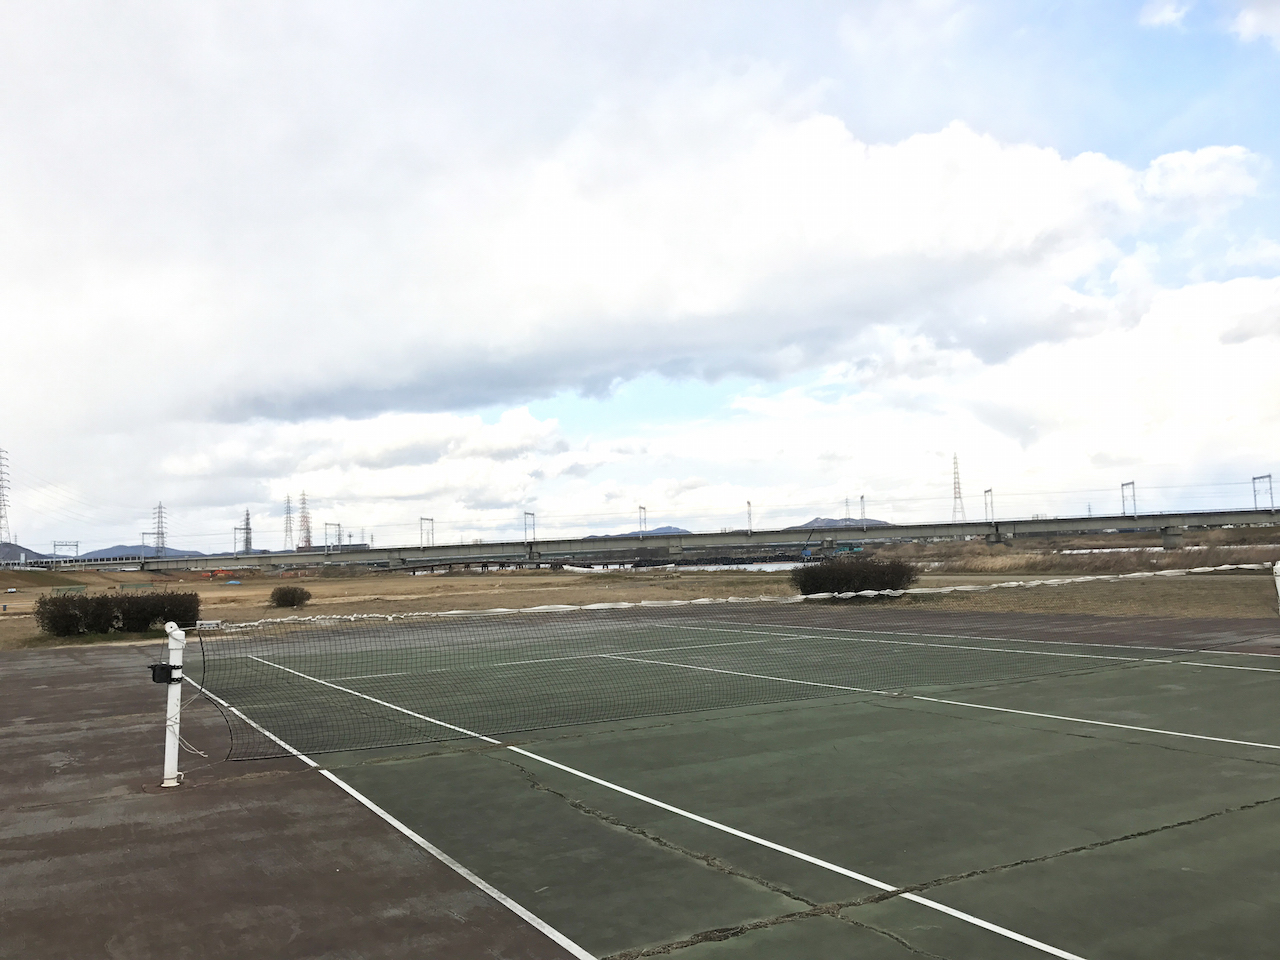 当日でもテニスできる！加古川の無料河川敷テニスコートは予約なしで使えるぞ